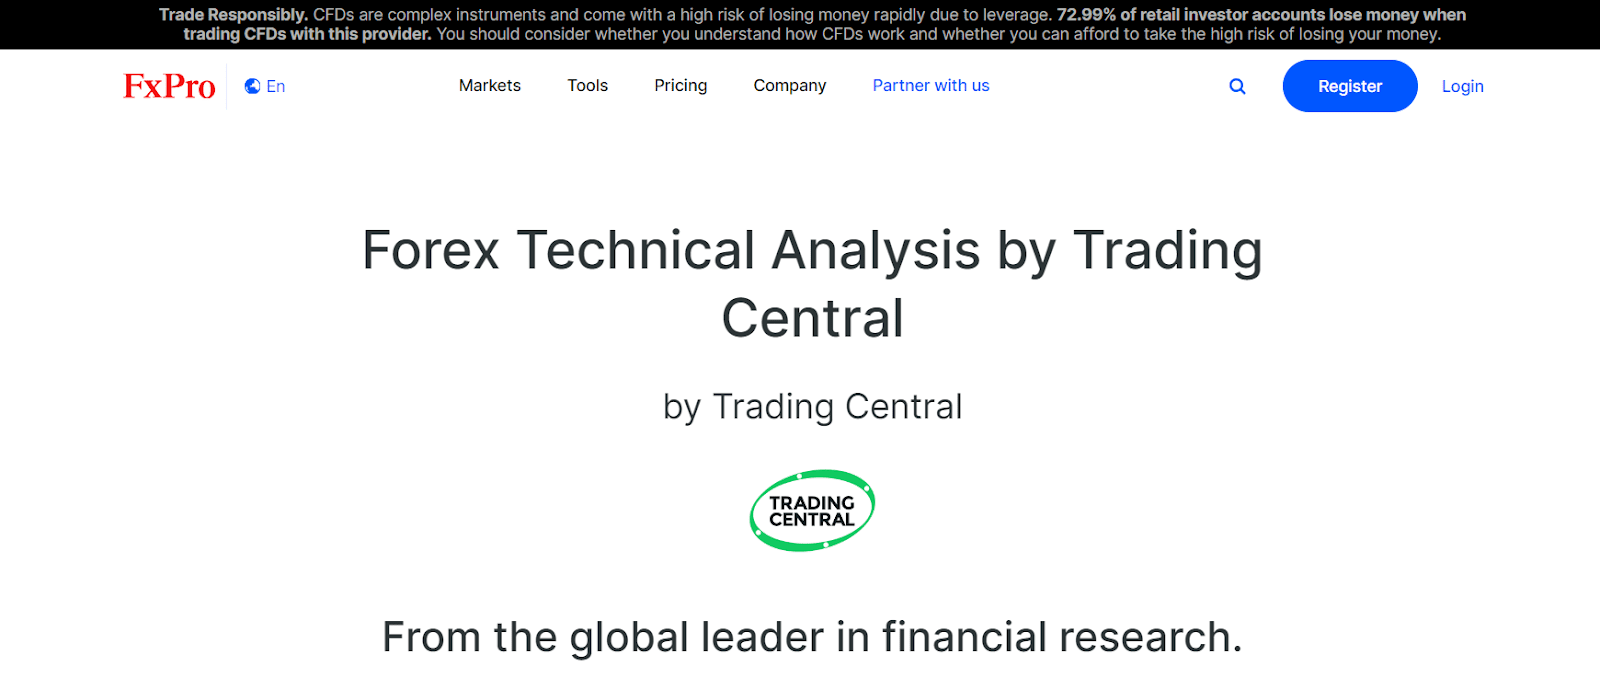 FxPro के उपयोगी टूल्स - Trading Central एनालिटिक्स